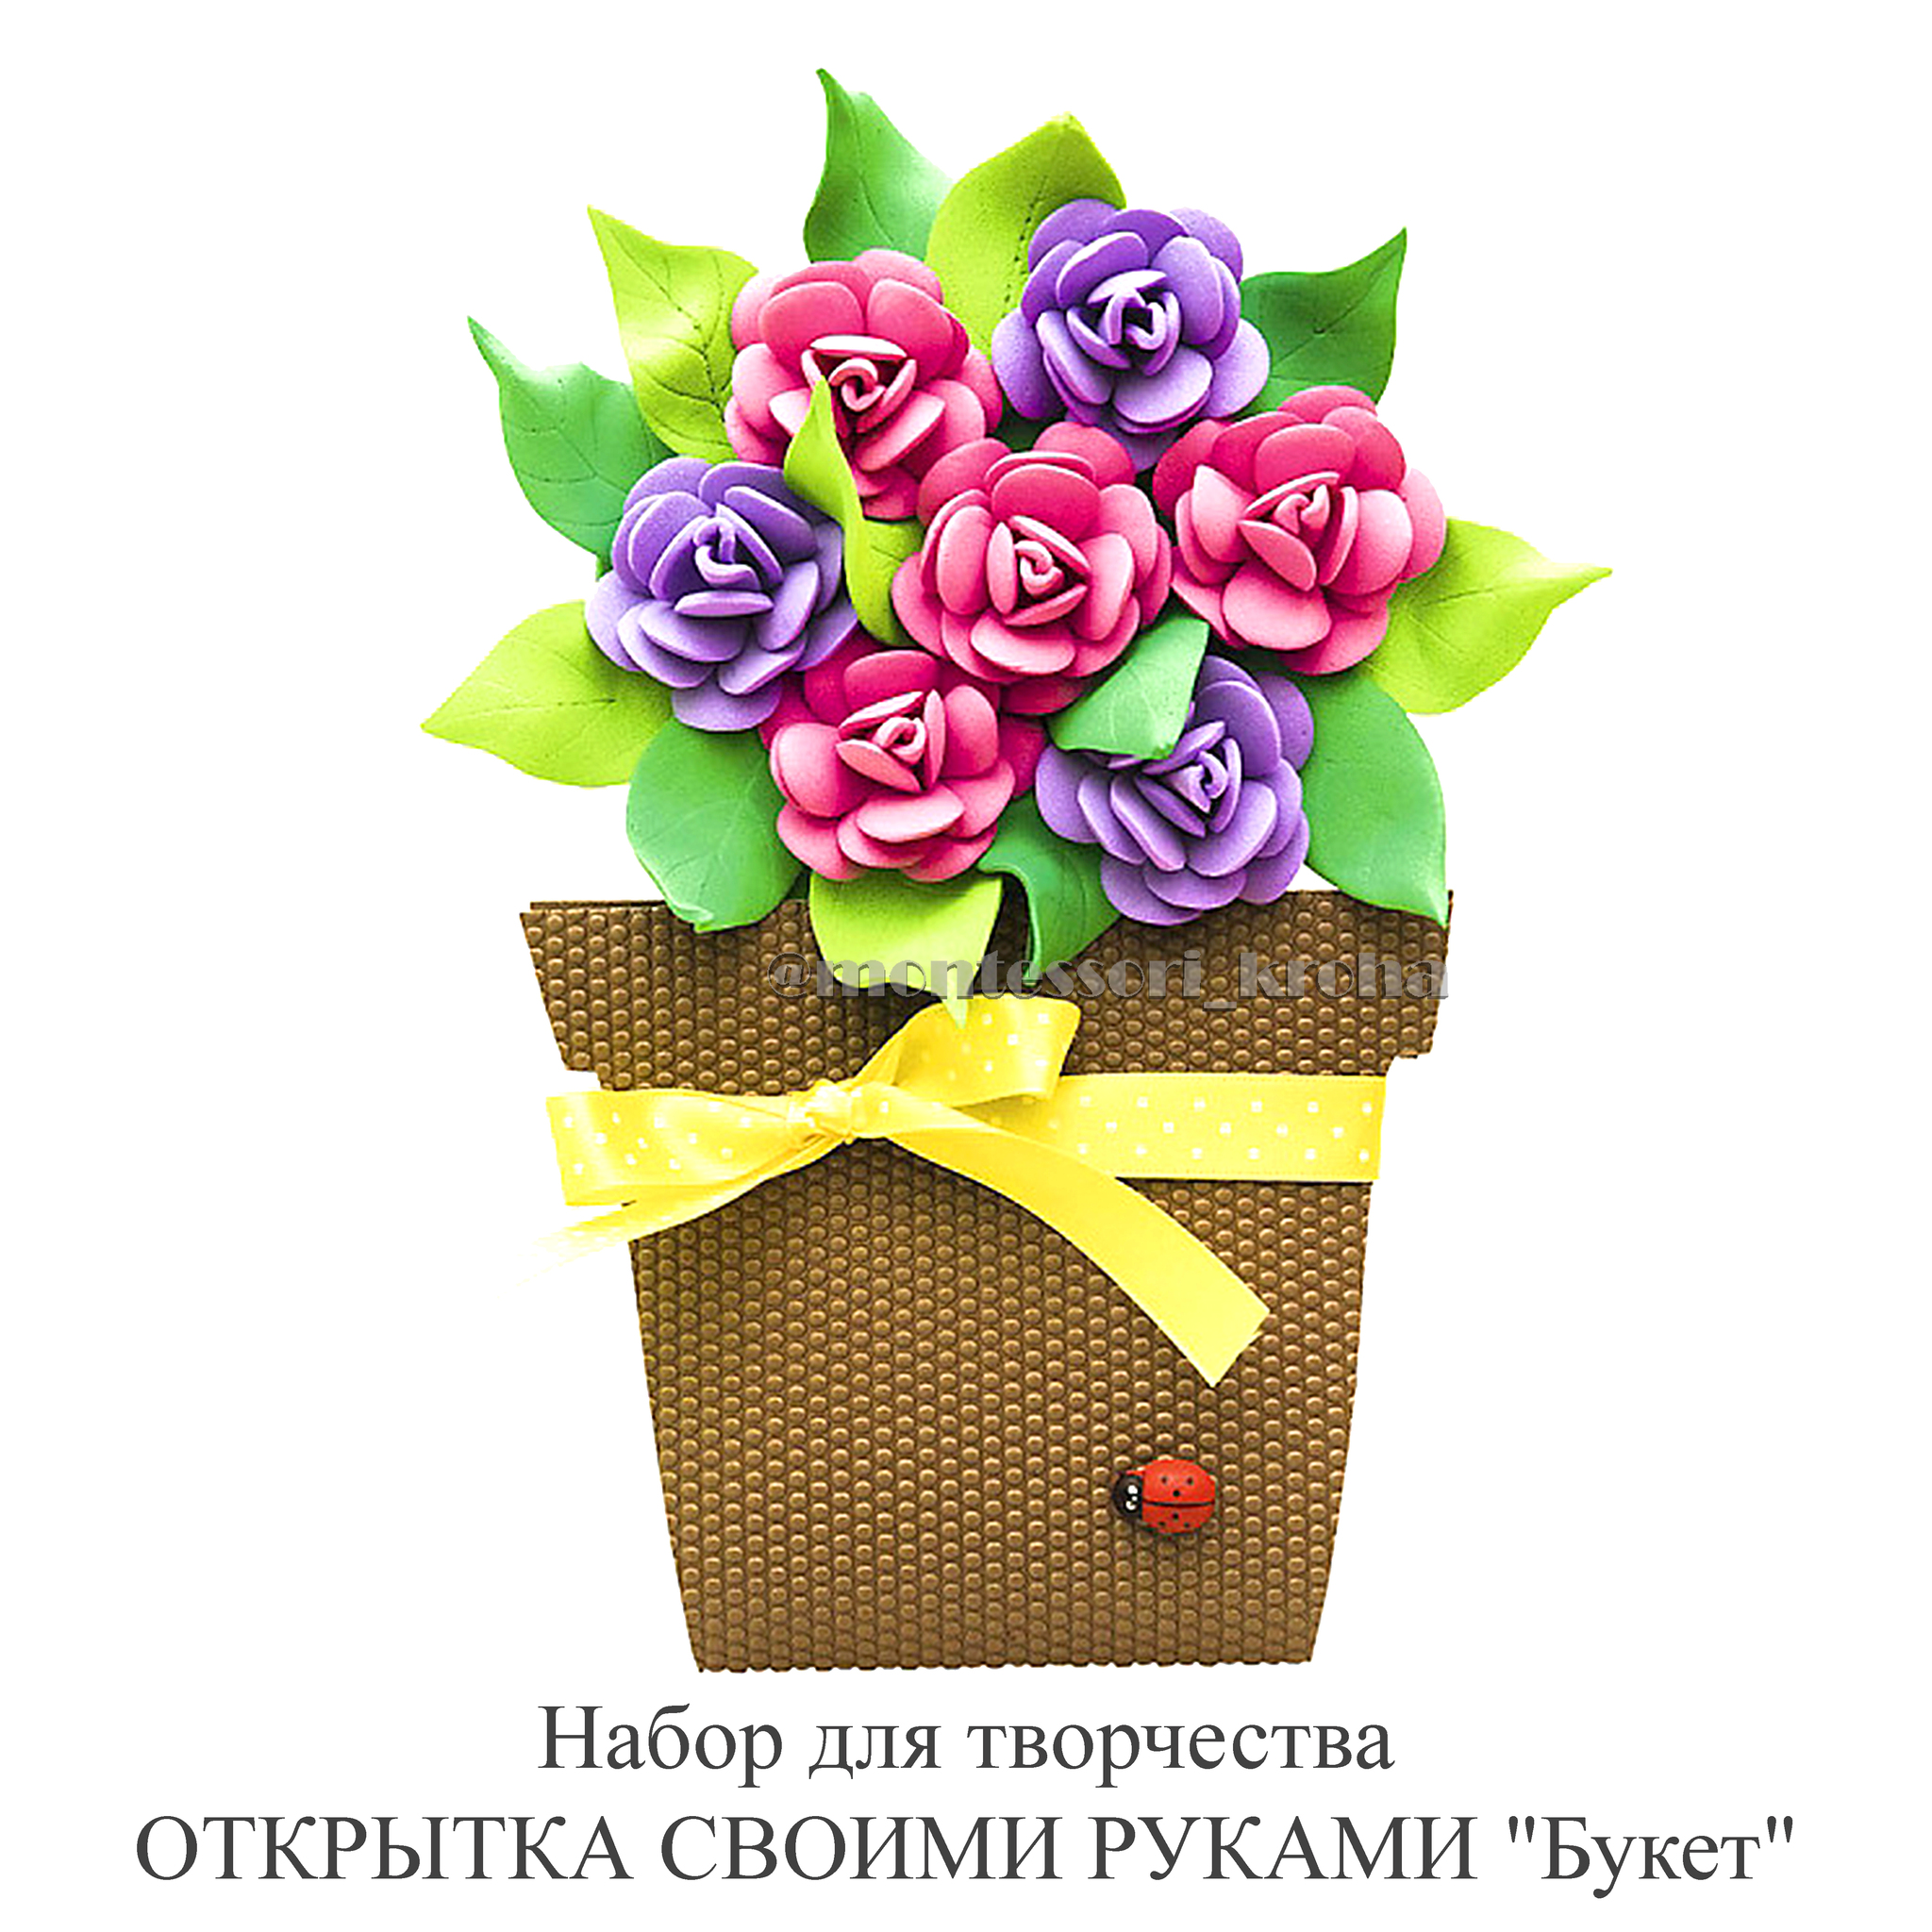 Цветы в корзине – запоминающийся подарок на любое торжество